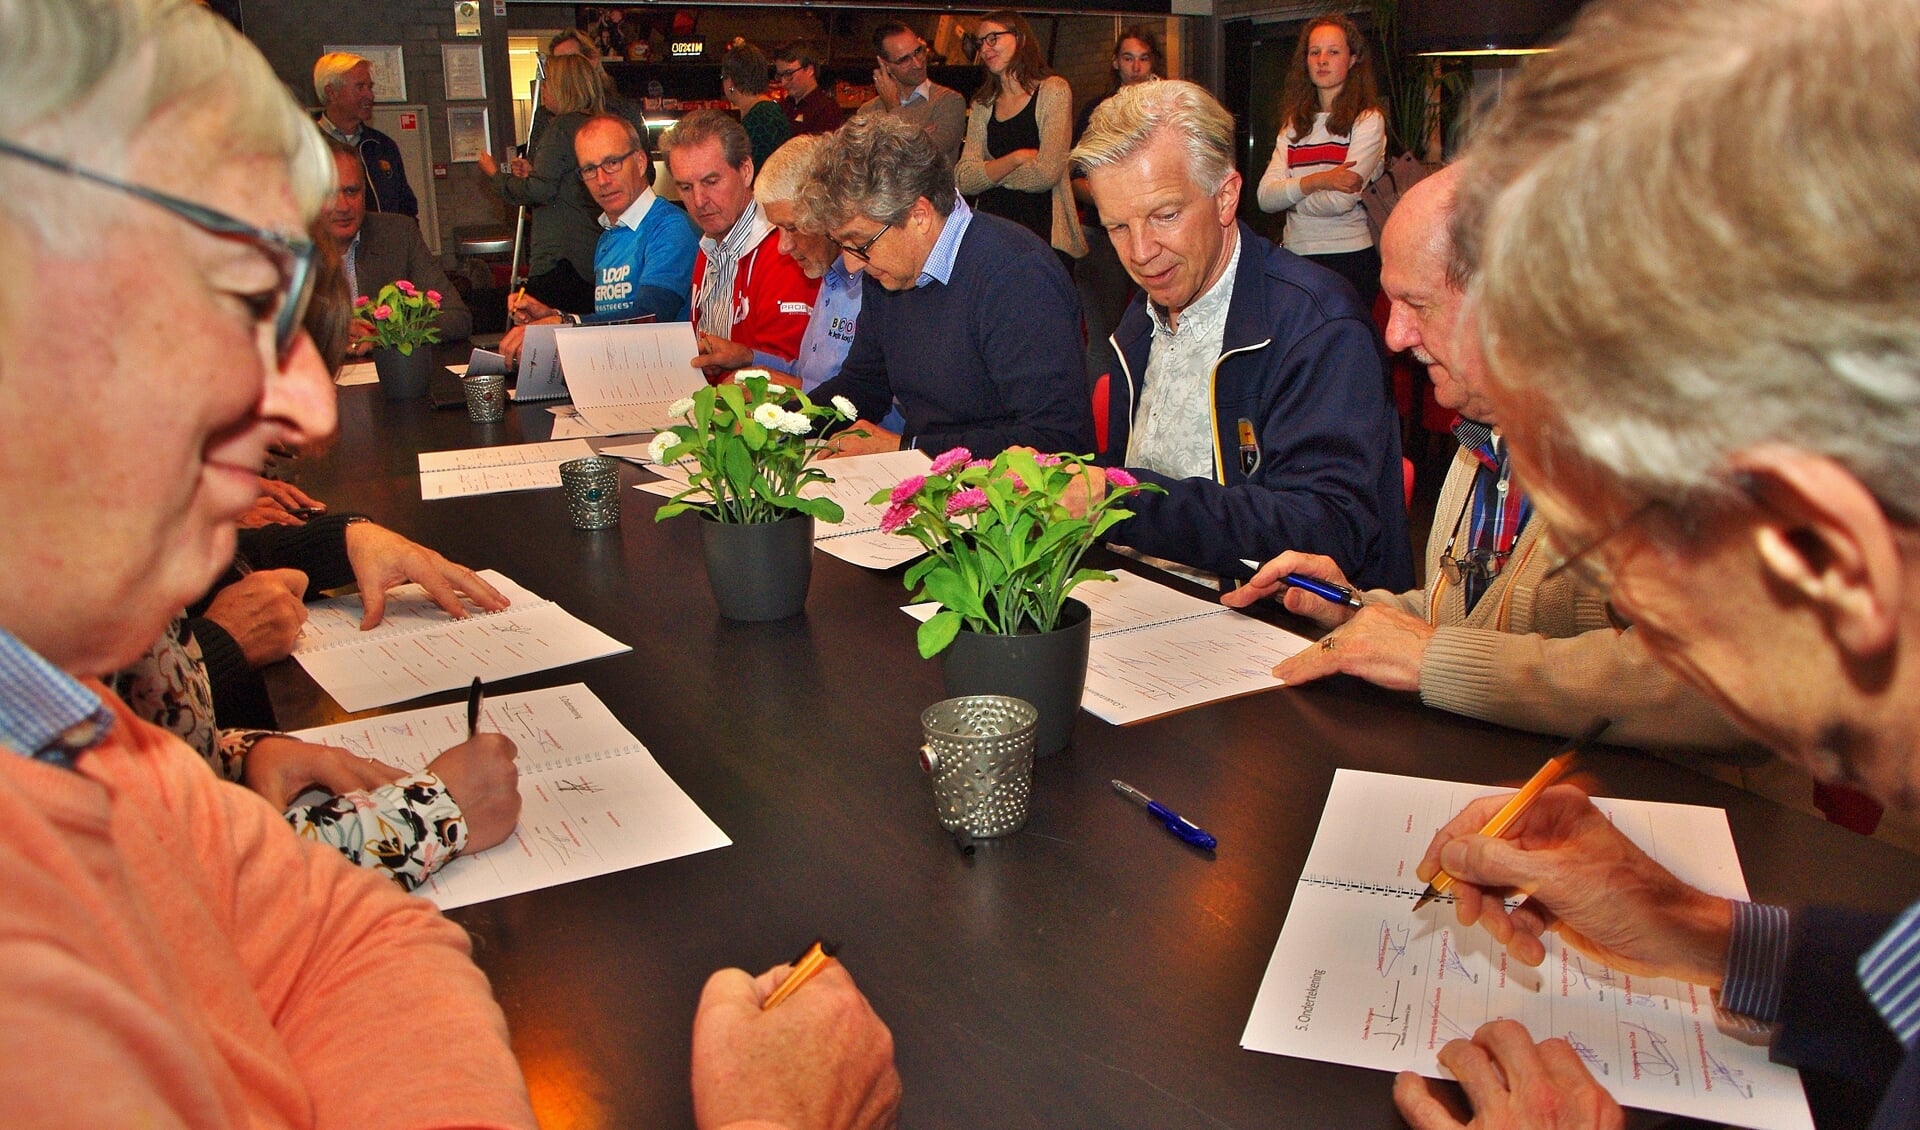 Alle verenigingen tekenden het sportakkoord. | Foto's Willemien Timmers

